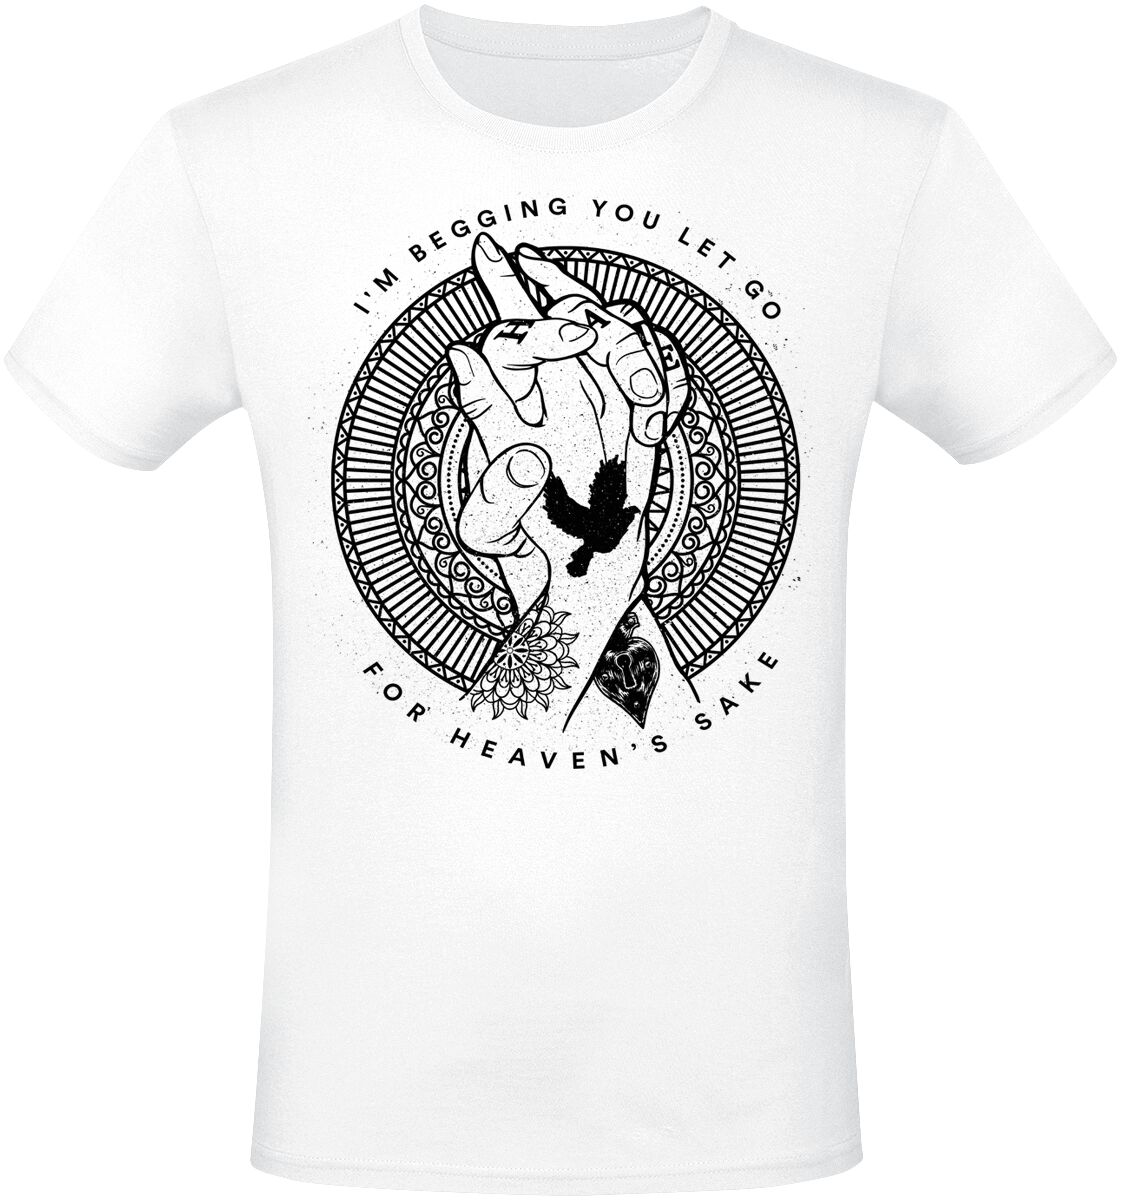 Imminence T-Shirt - For Heaven Sake - L bis XXL - für Männer - Größe XL - weiß  - EMP exklusives Merchandise!